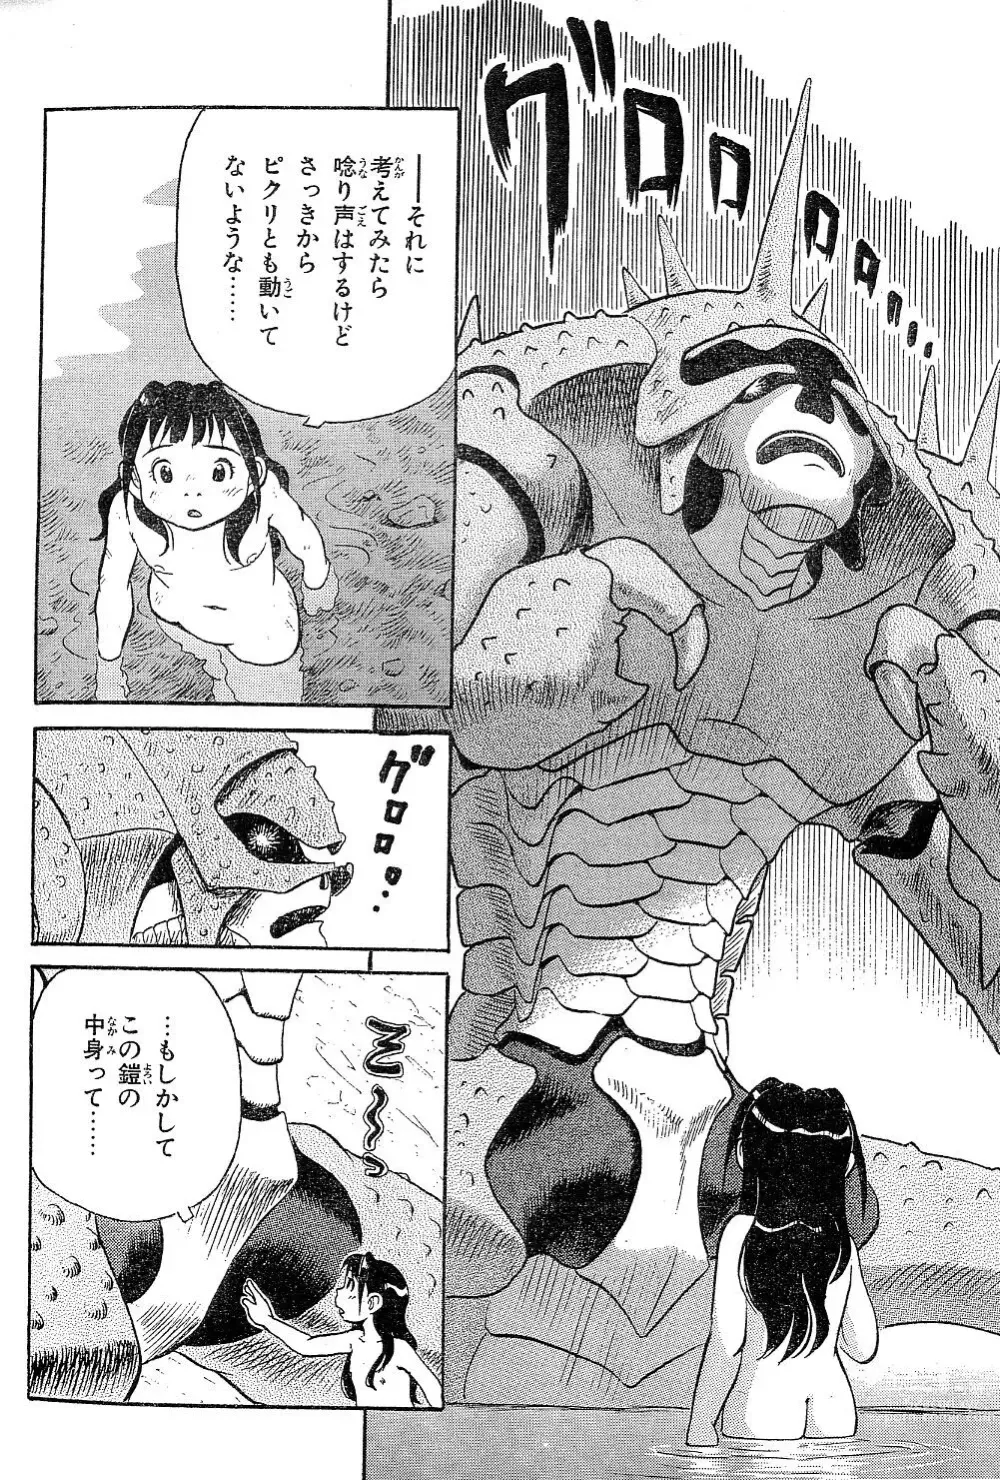 Page 8 of manga Yamaneko-sensei no Monogatari